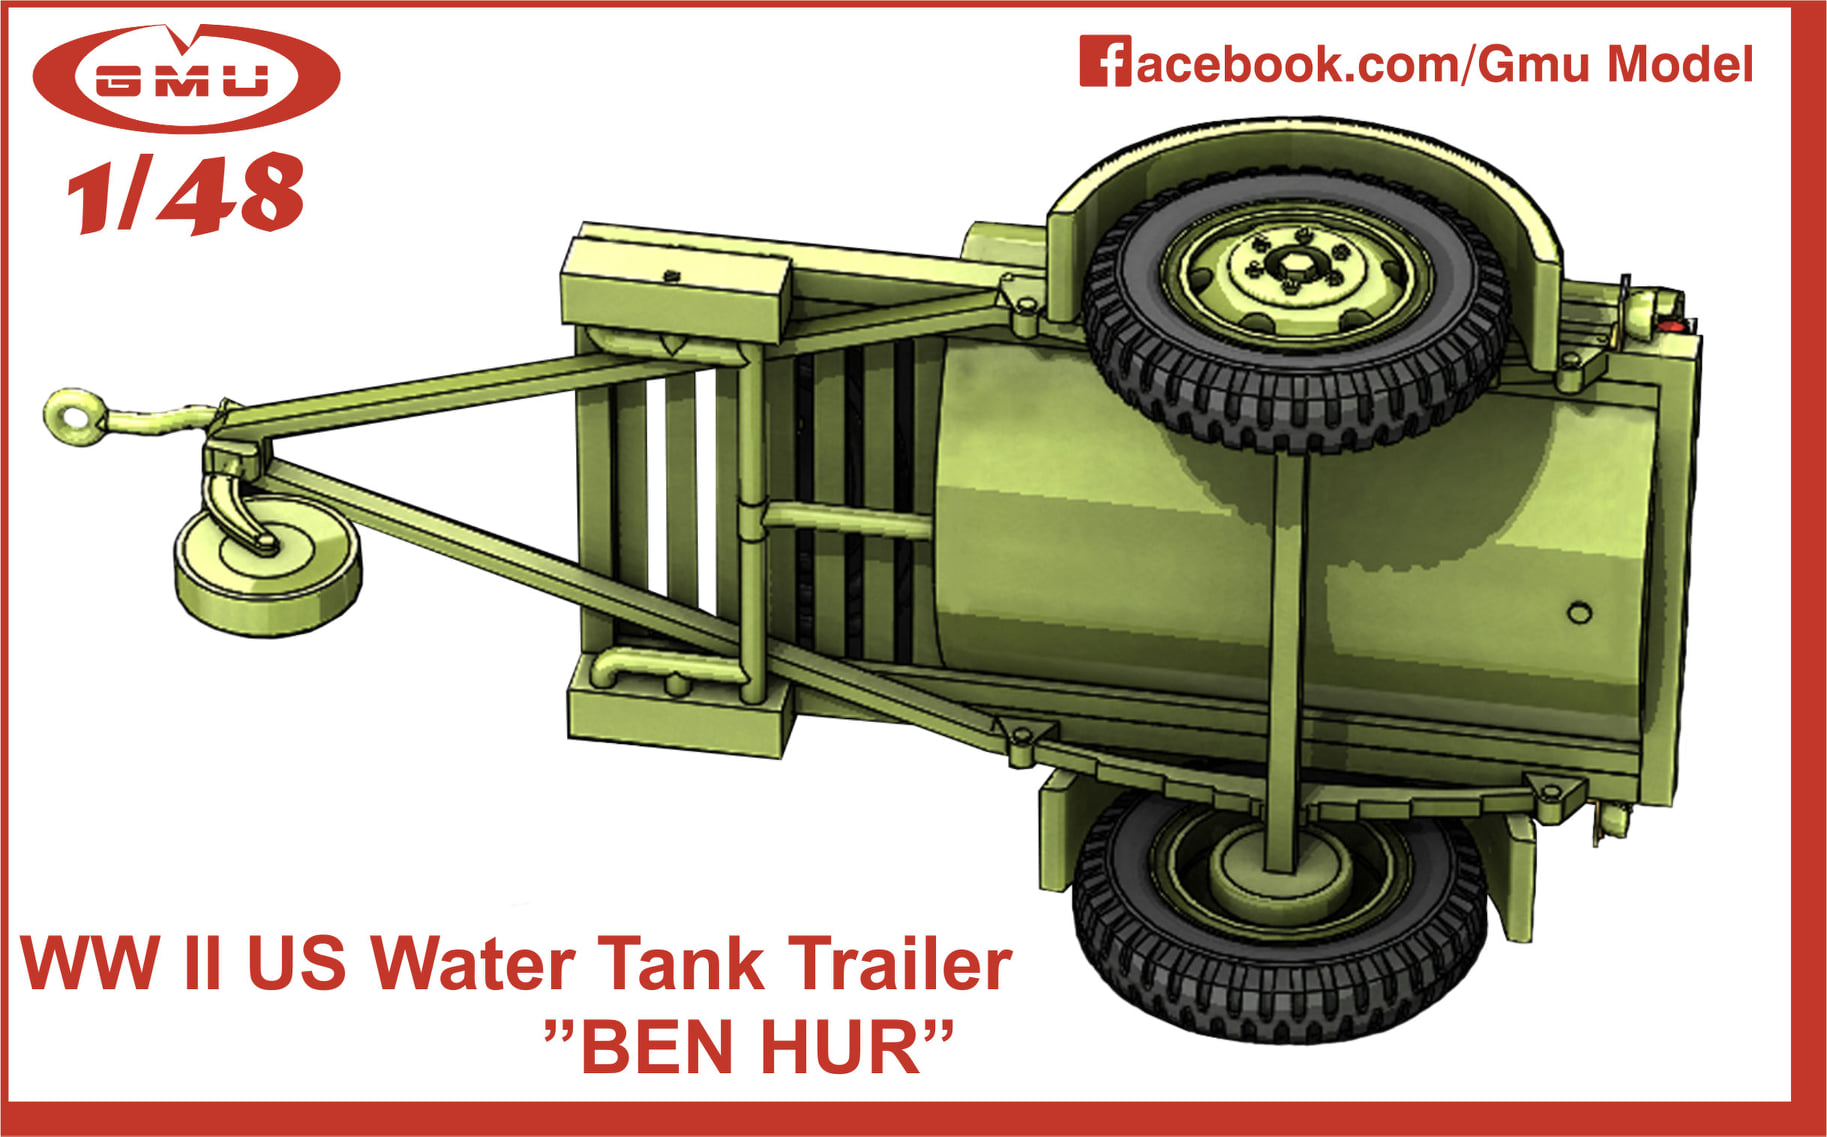 GMU Model - WW II US Water Tank Trailer ”BEN HUR” - 1/48